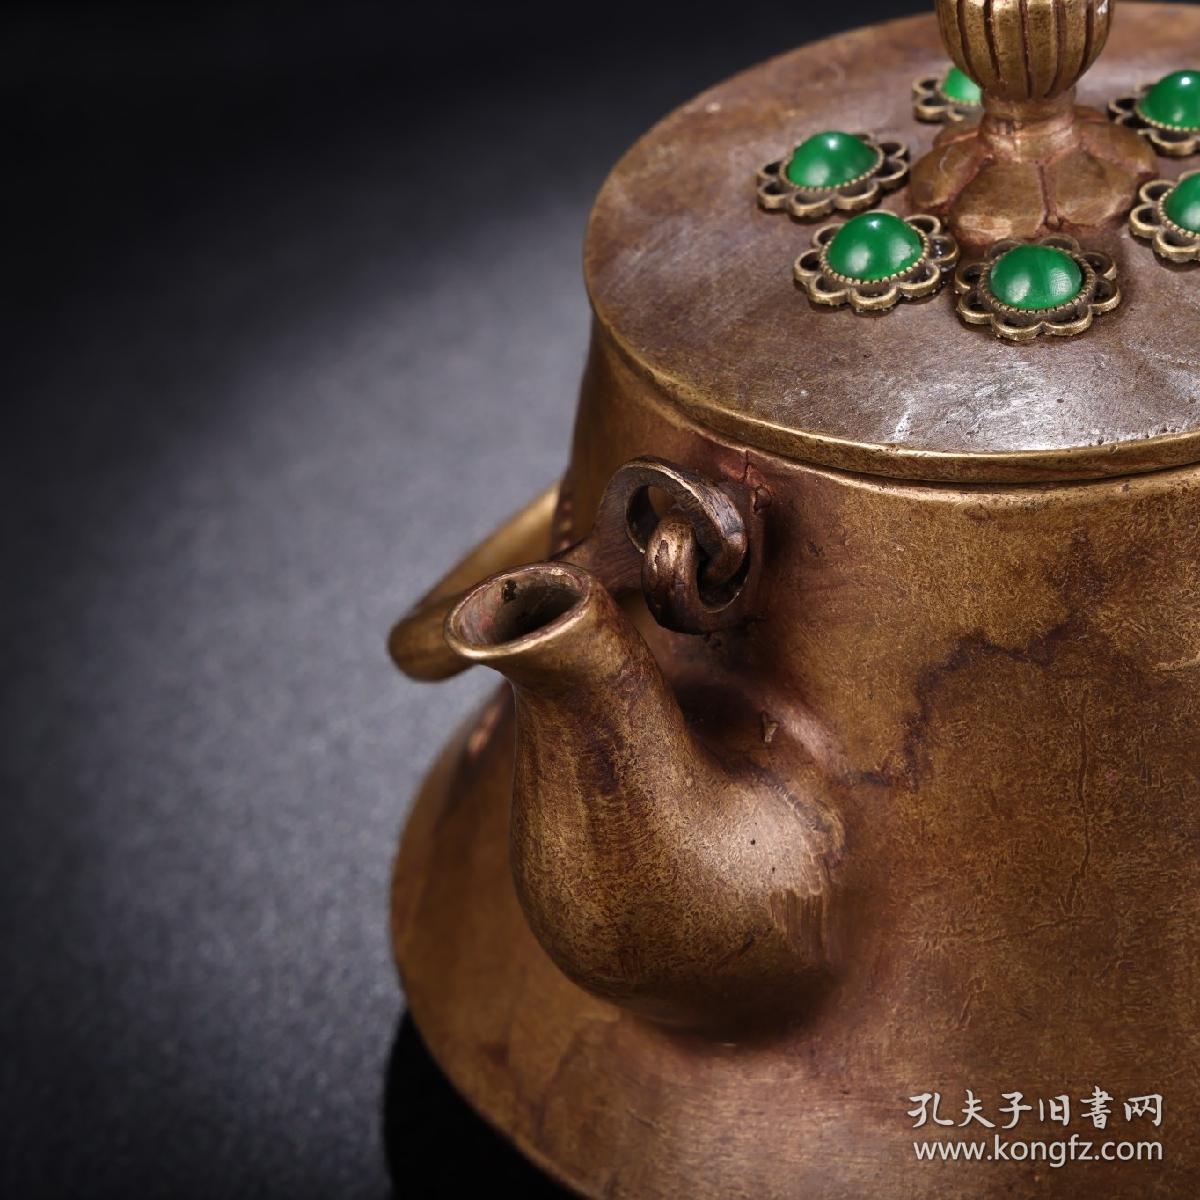 旧藏收纯铜镶嵌宝石训马茶壶
高15厘米  宽15厘米  重875克